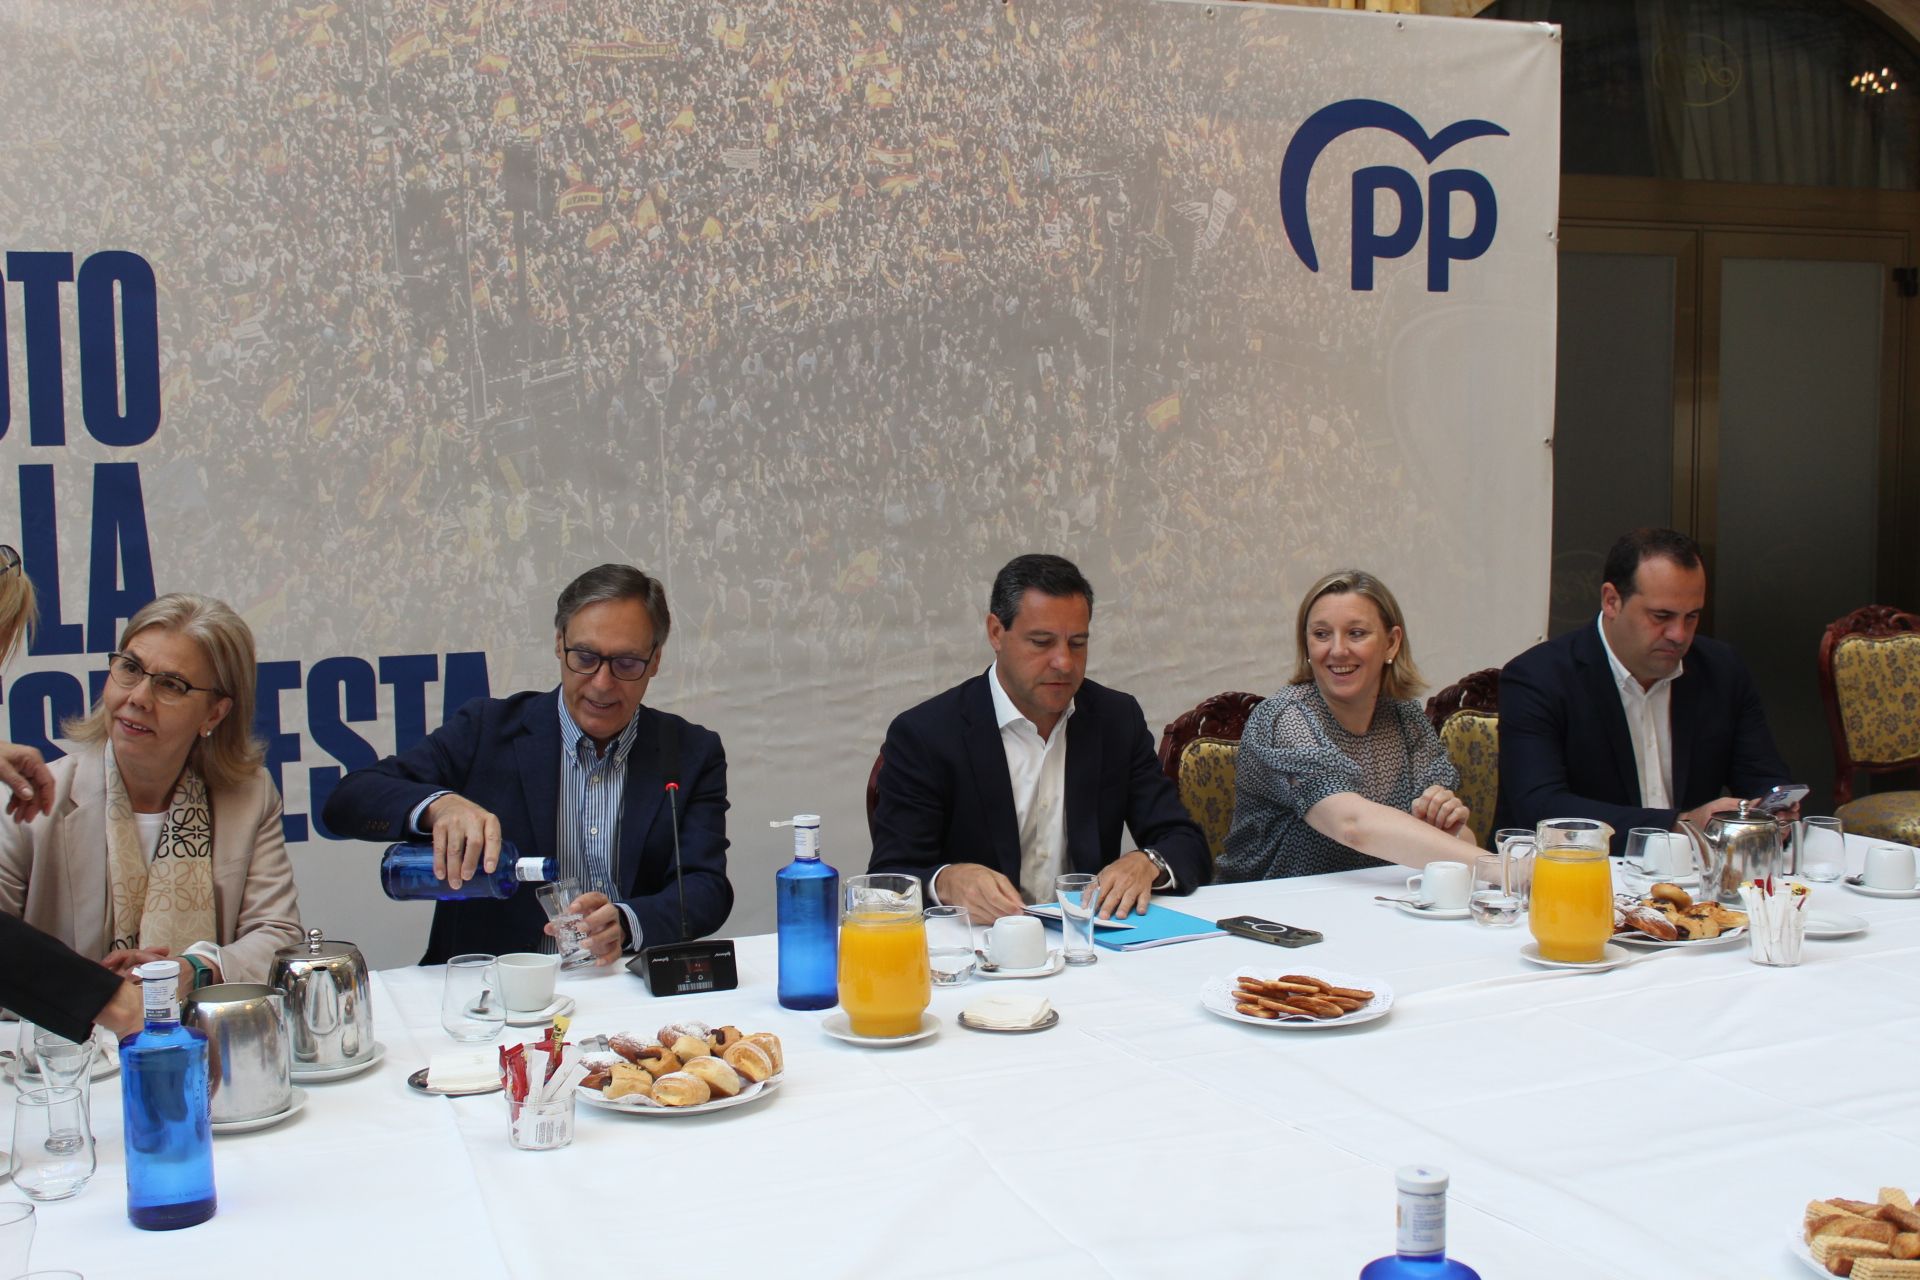 Desayuno informativo del PP para presentar el programa electoral del PP de cara a las elecciones europeas. Foto Carlos H.G